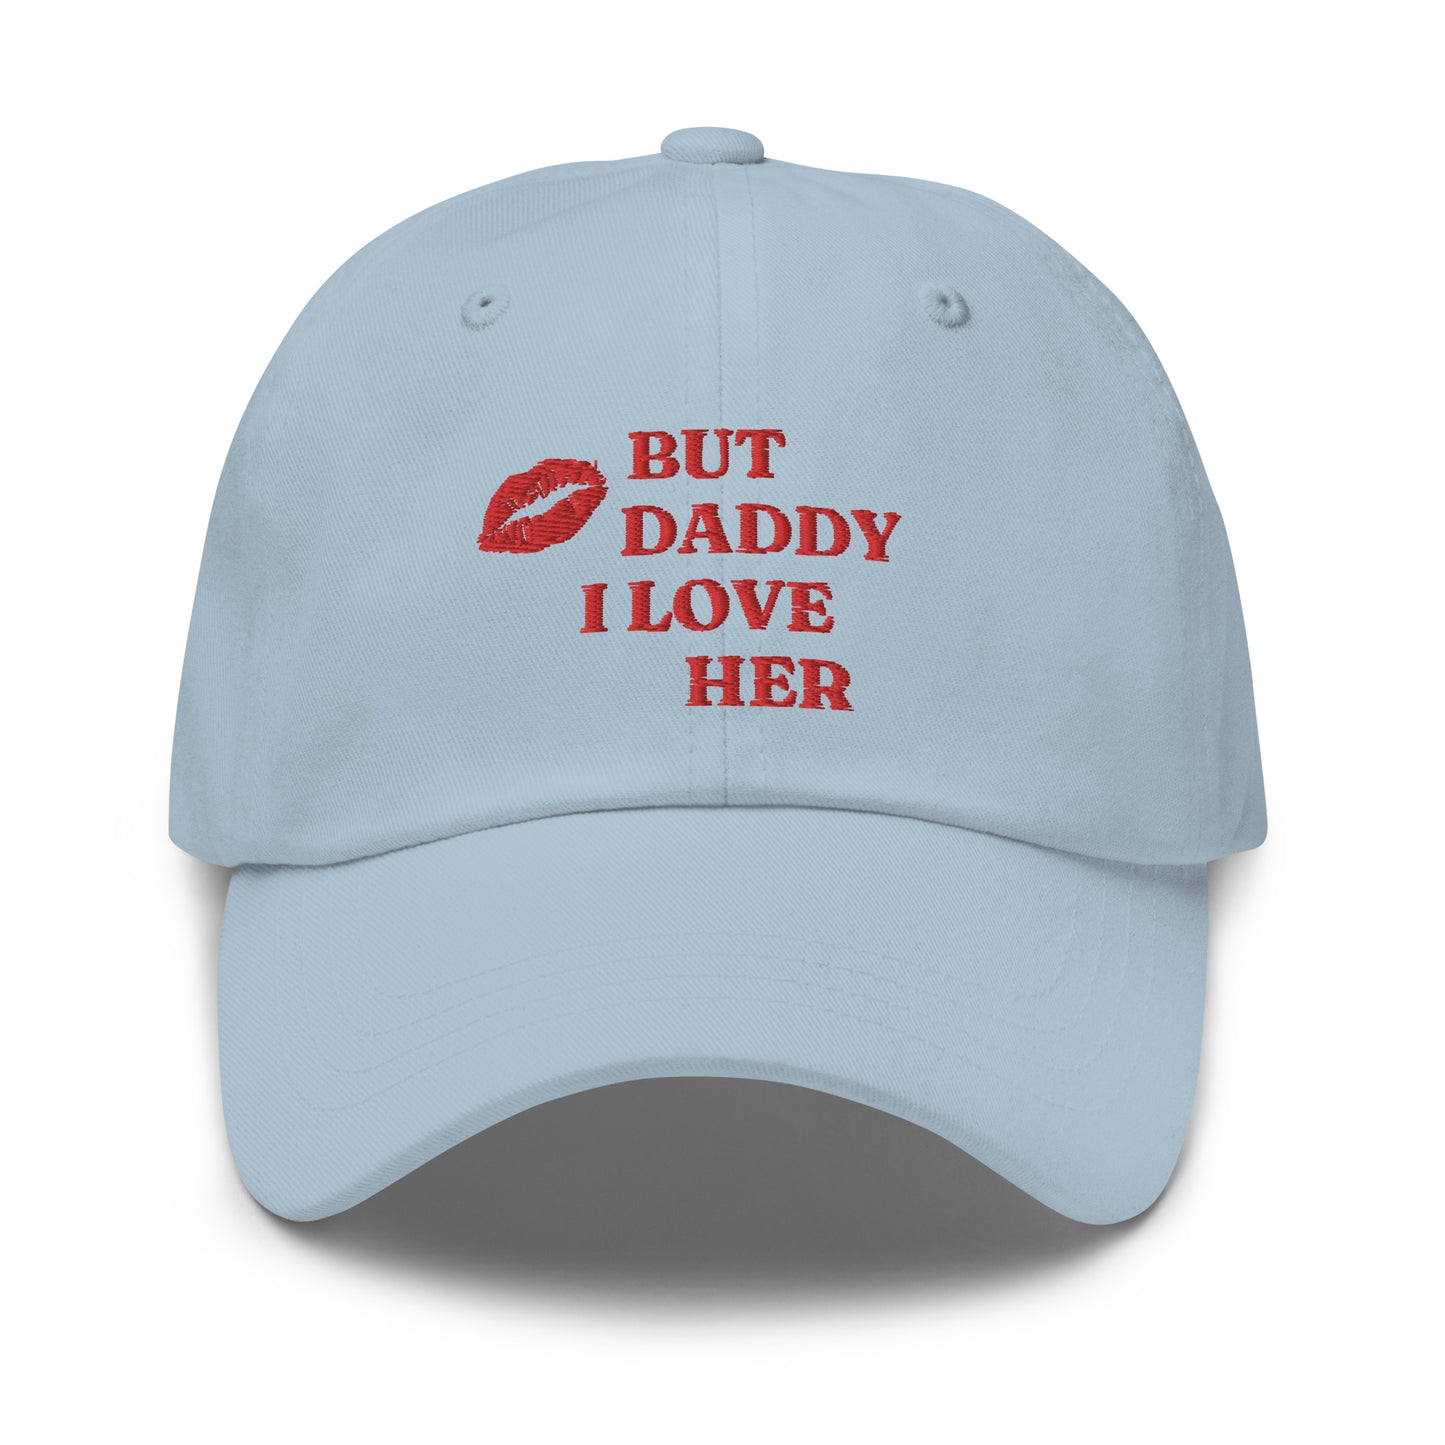 "DADDY" dat hat